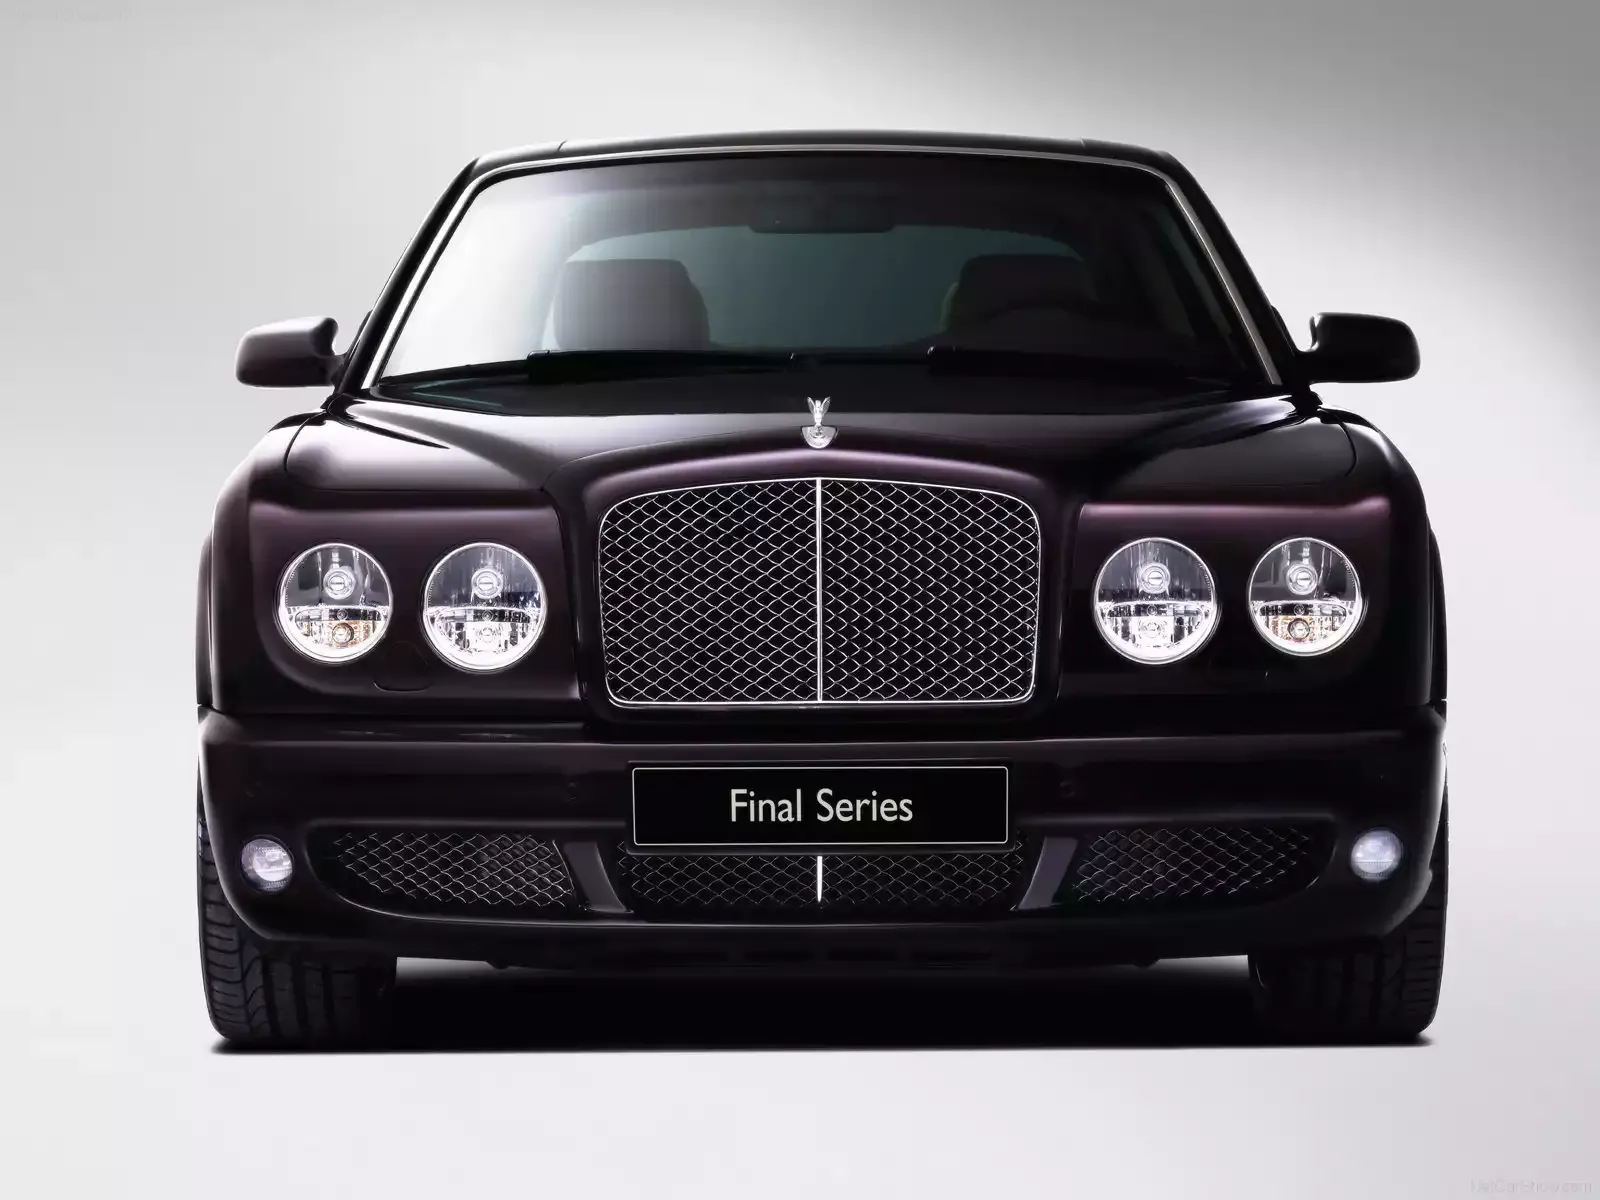 Hình ảnh xe ô tô Bentley Arnage Final Series 2009 & nội ngoại thất